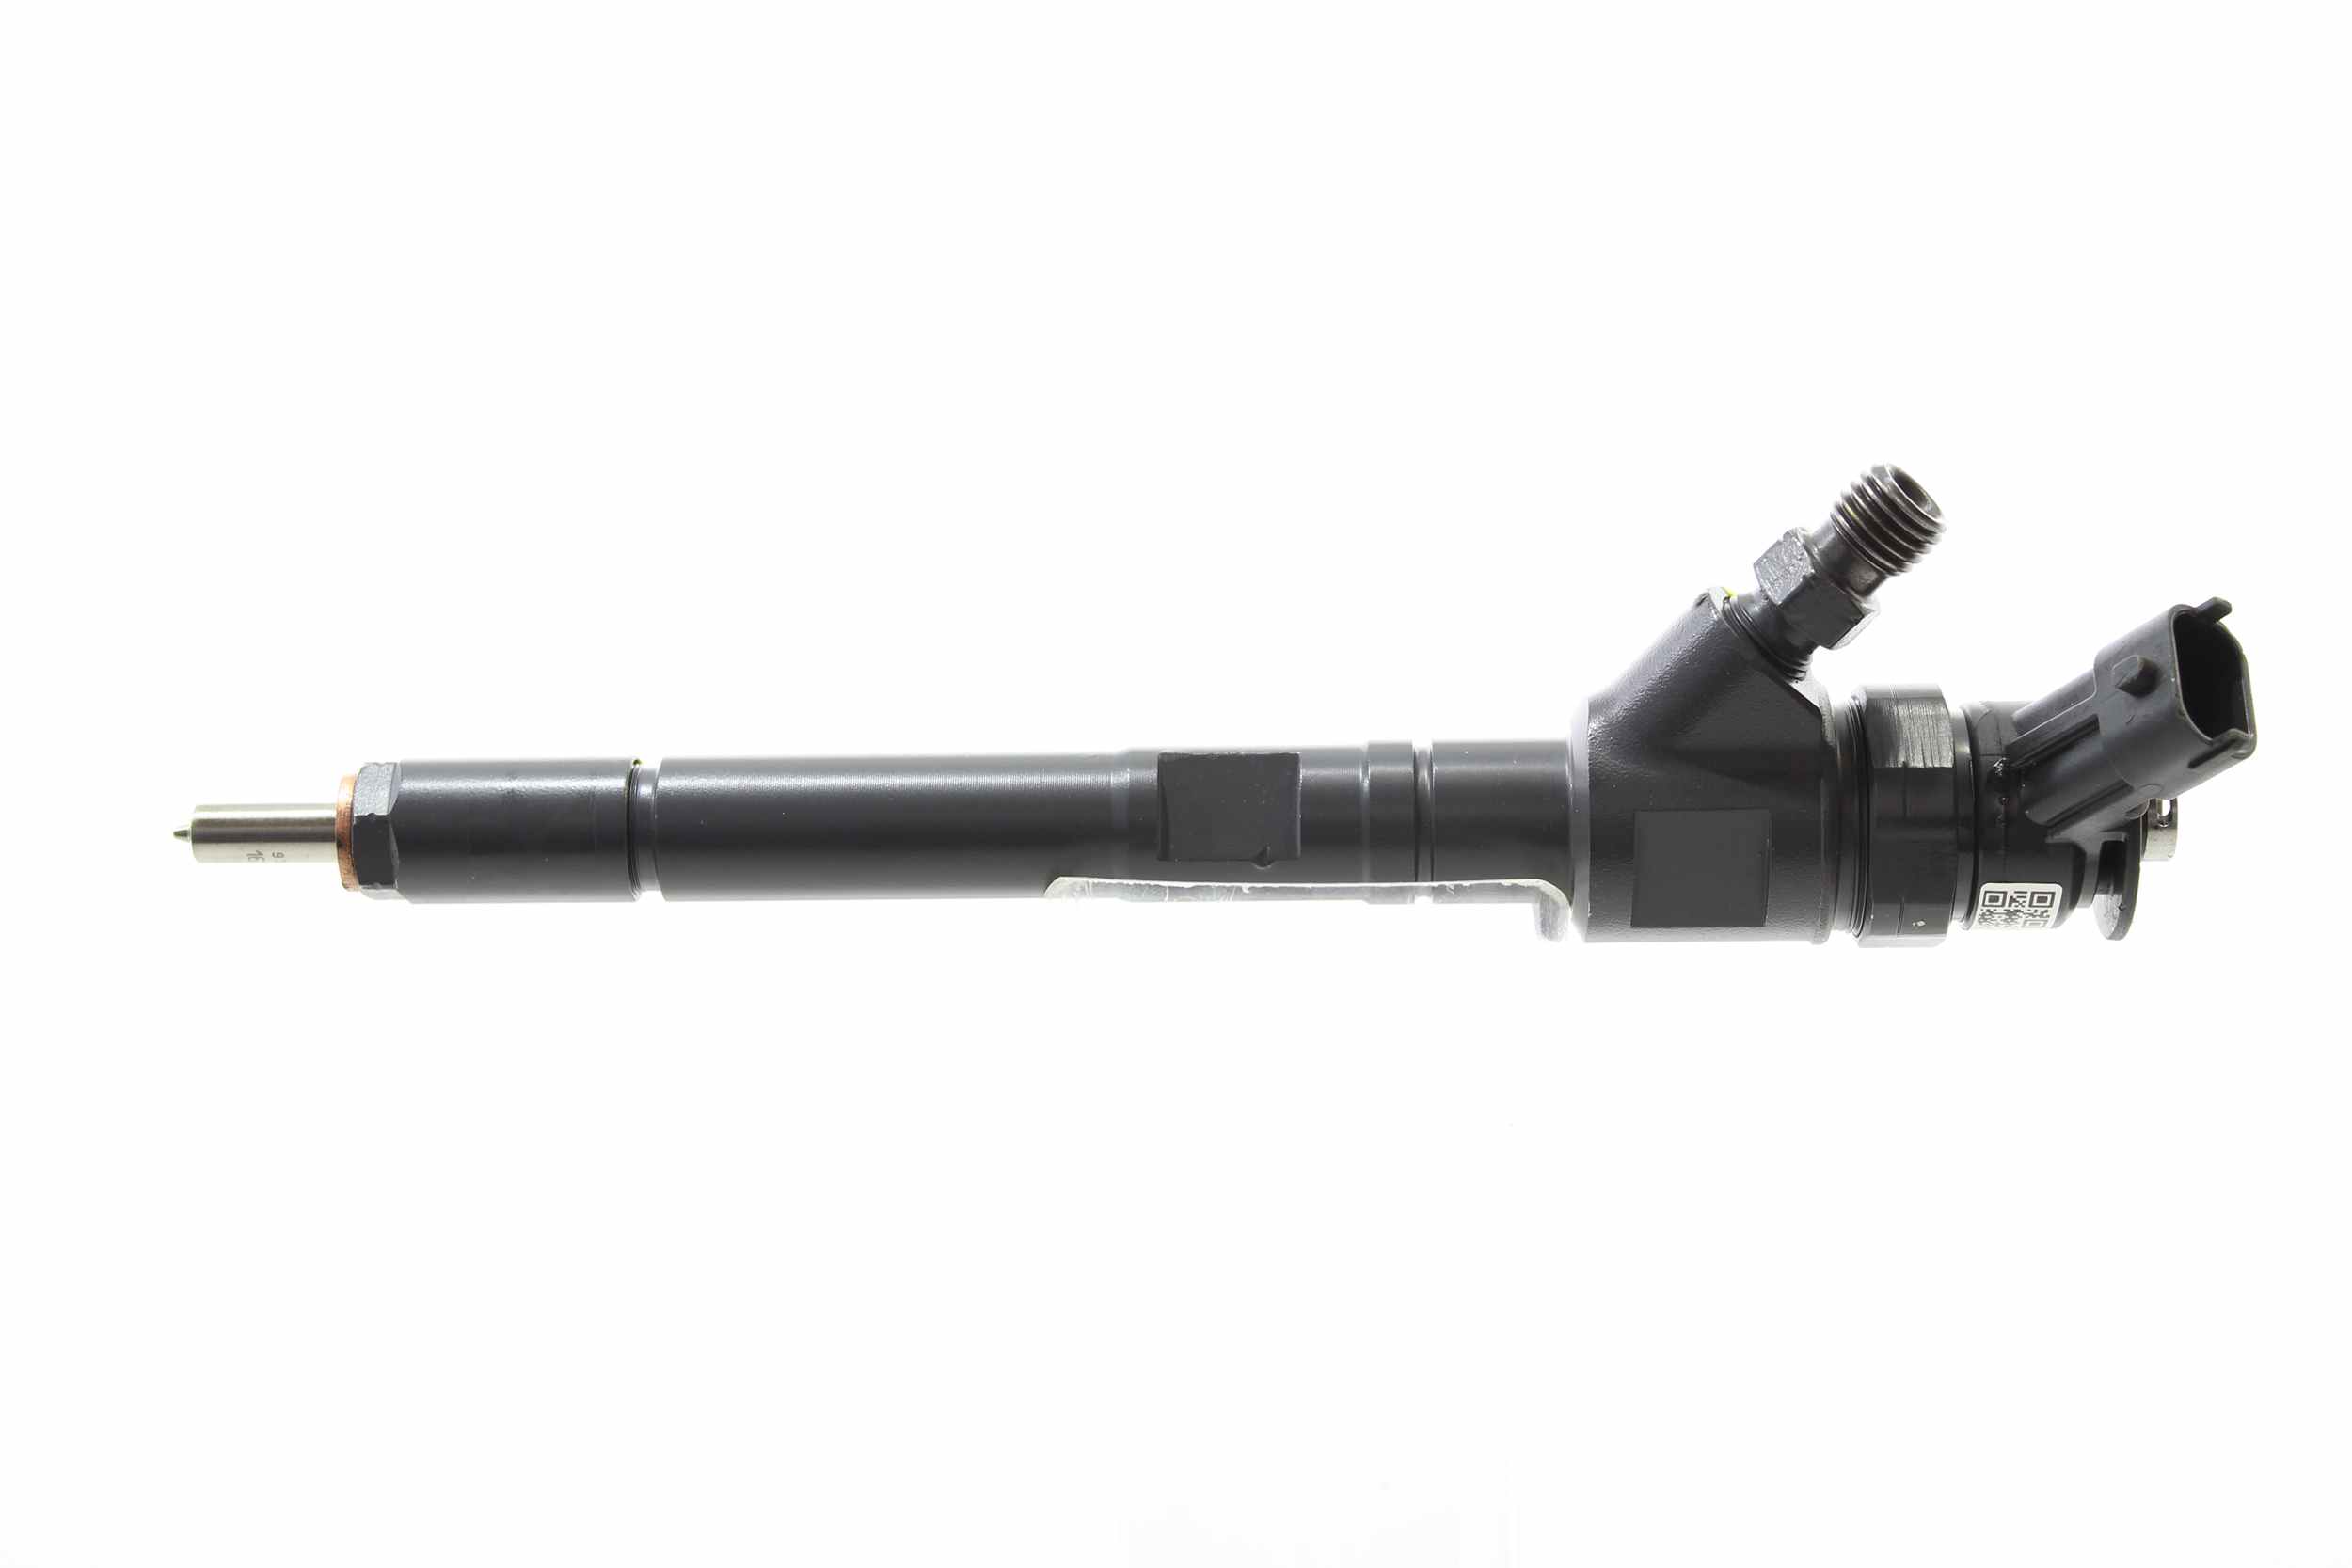 ALANKO 11970255 Injector Nozzle Common Rail (CR)